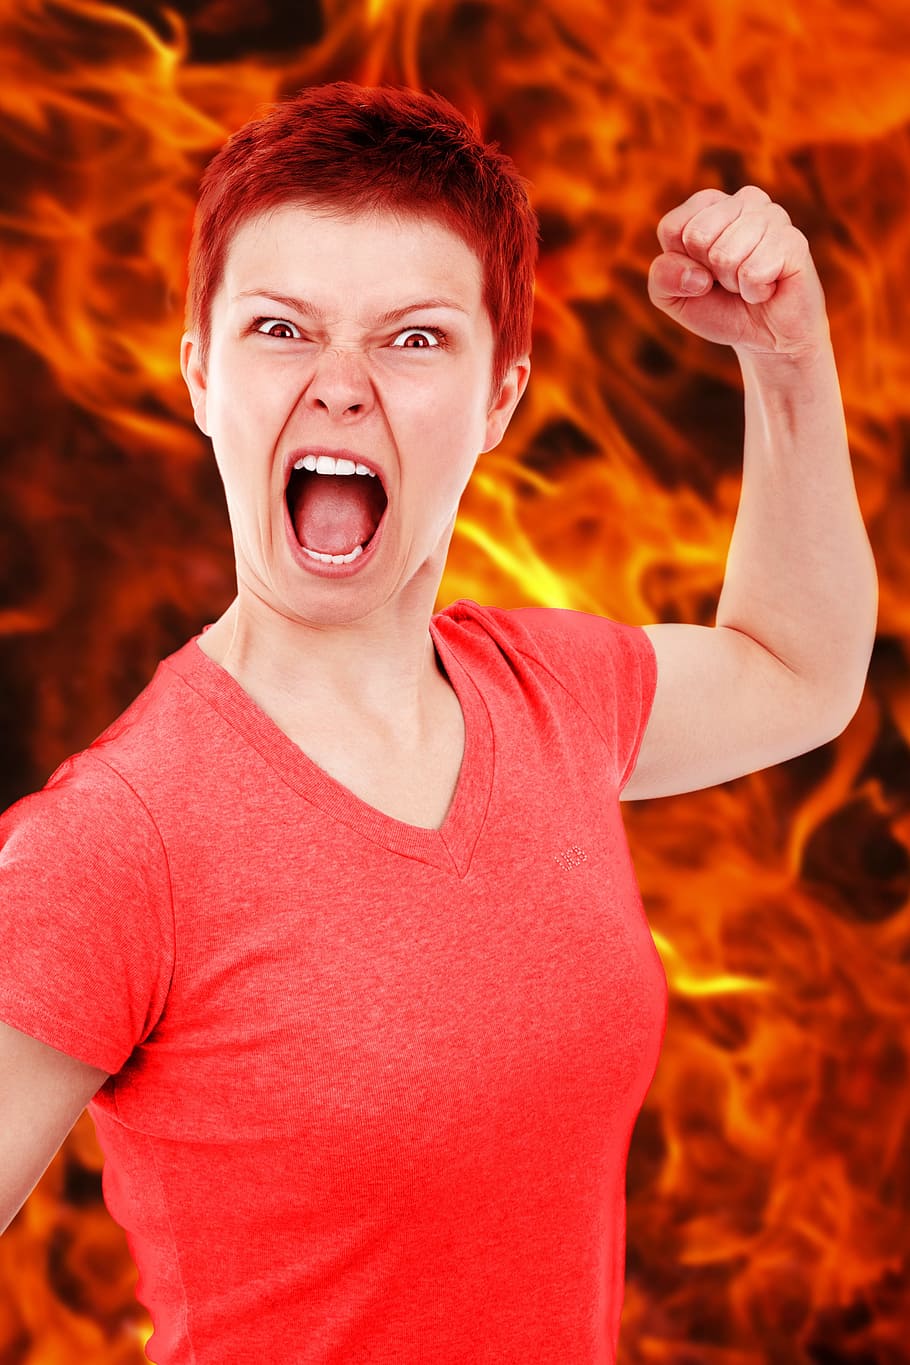 mujer, rojo, cuello en v, parte superior, fondo de llama, ira, enojado, malo, quemar, peligroso